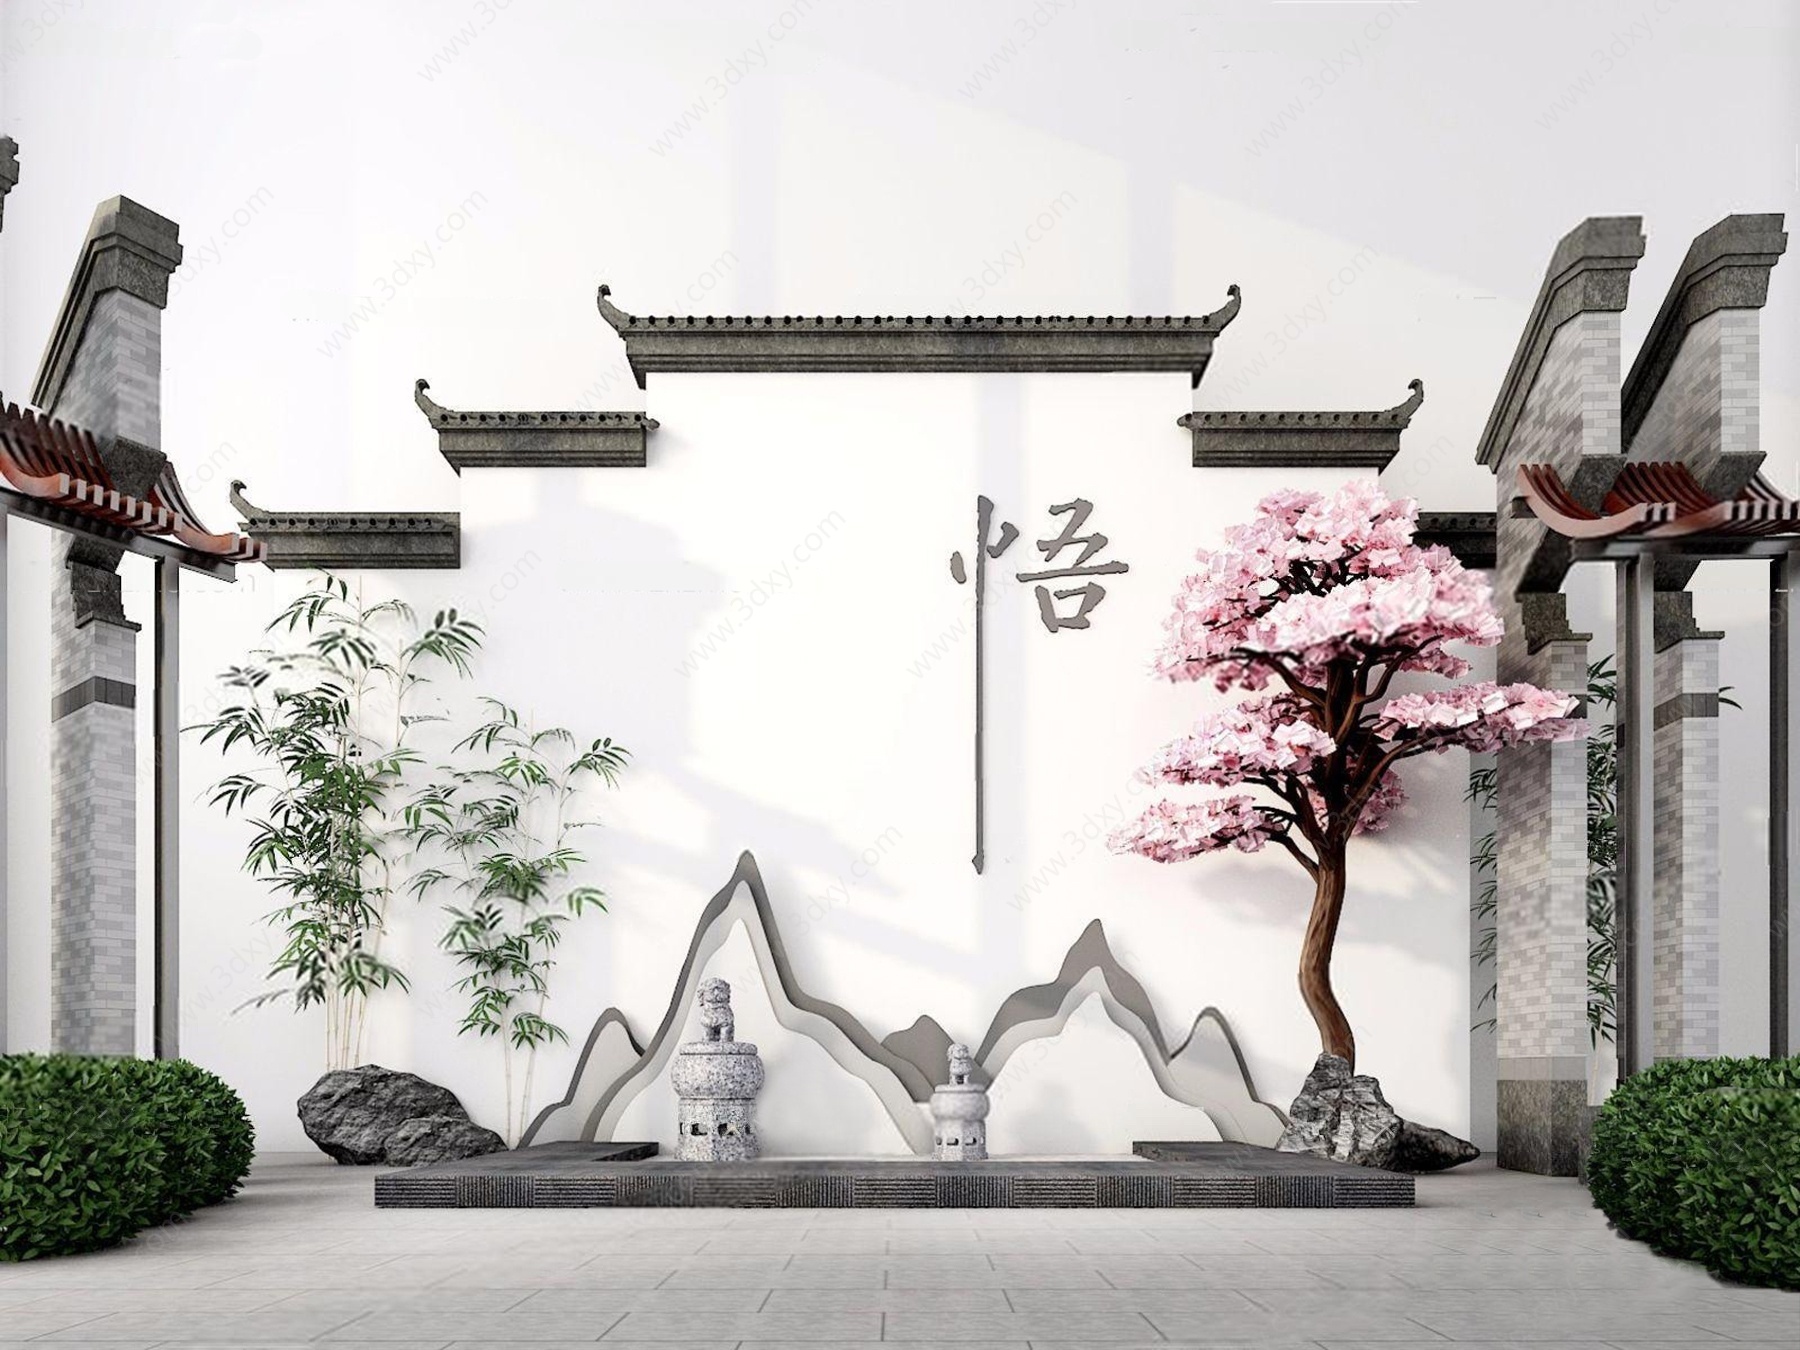 新中式徽派建筑室外景3D模型